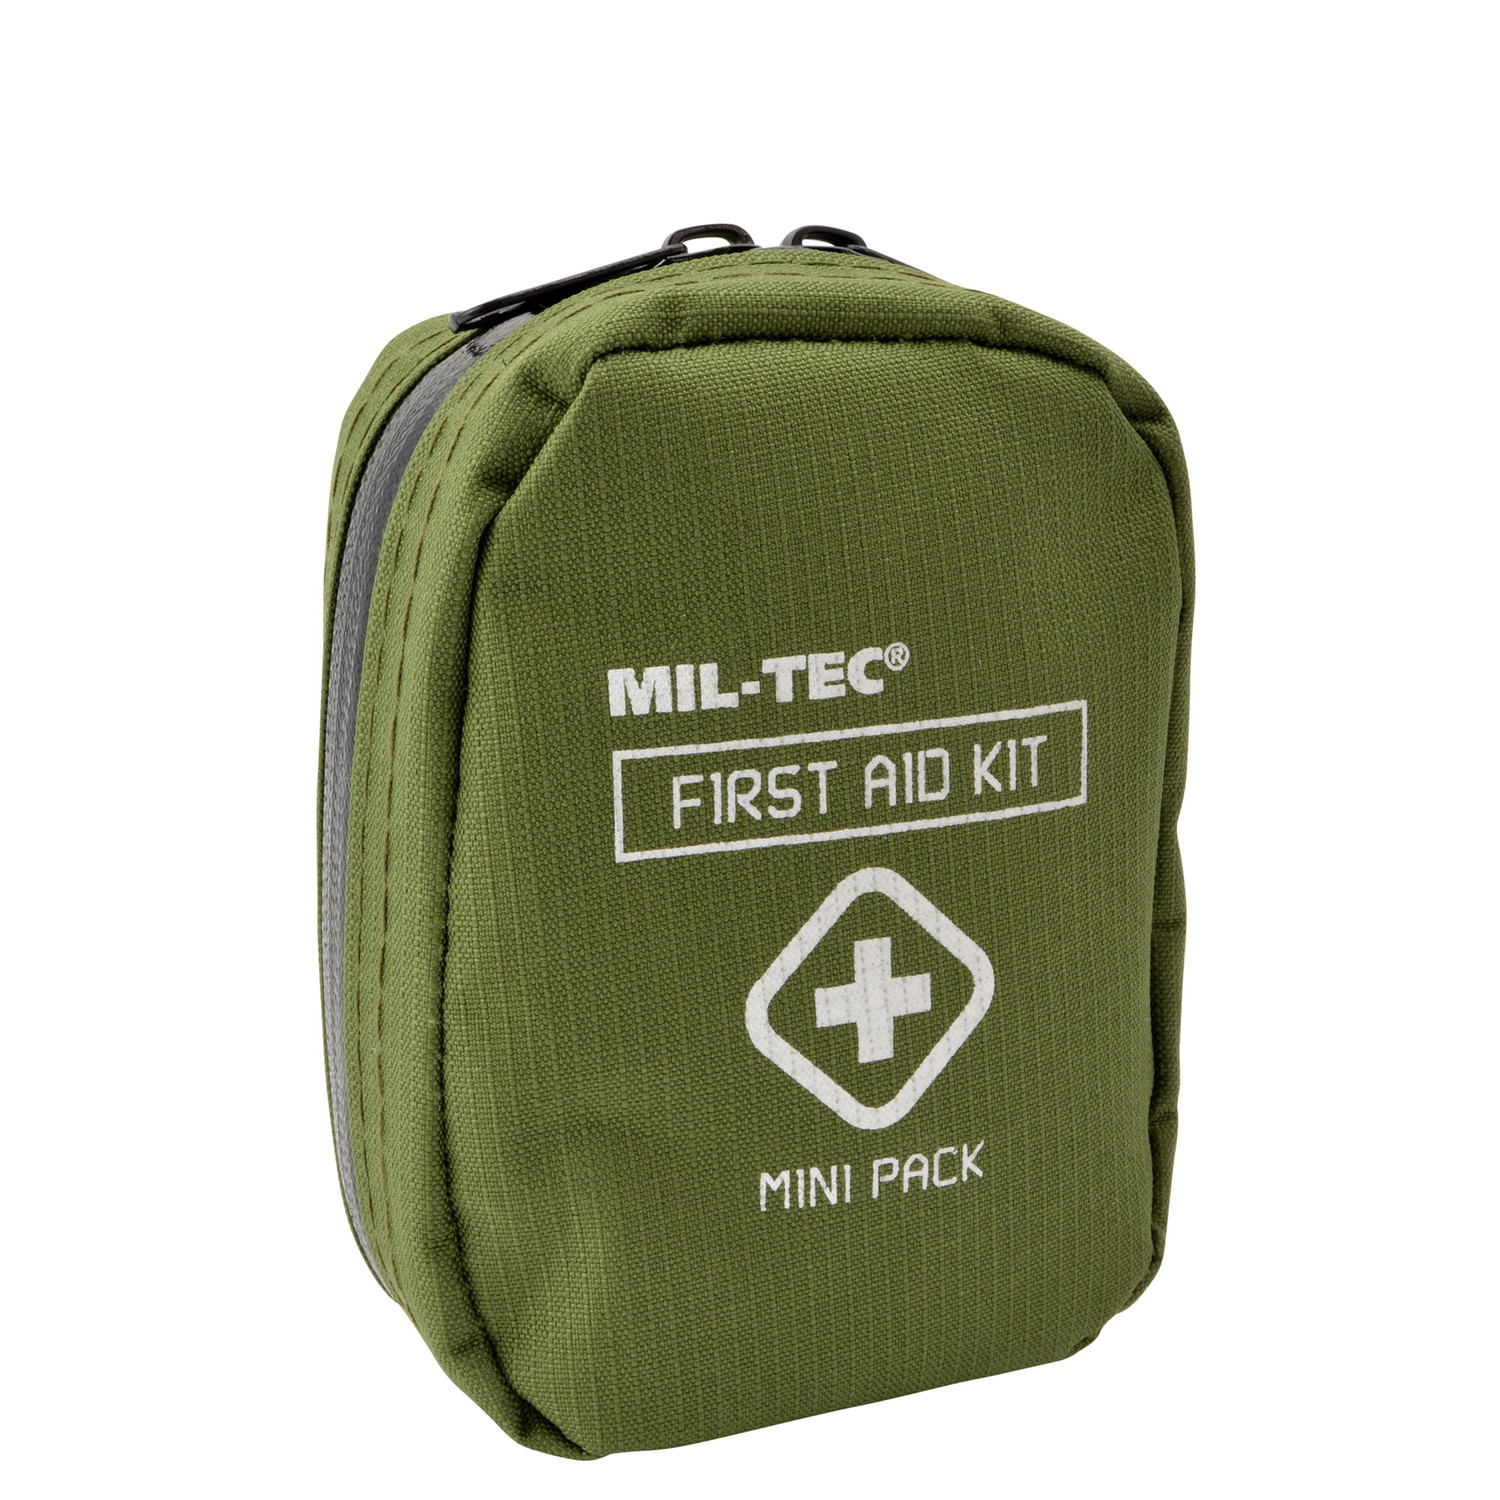 Mil-Tec First Aid Kit Mini Pack (Klein) in Oliv - kompakte Reißverschlusstasche mit Erste Hilfe Material